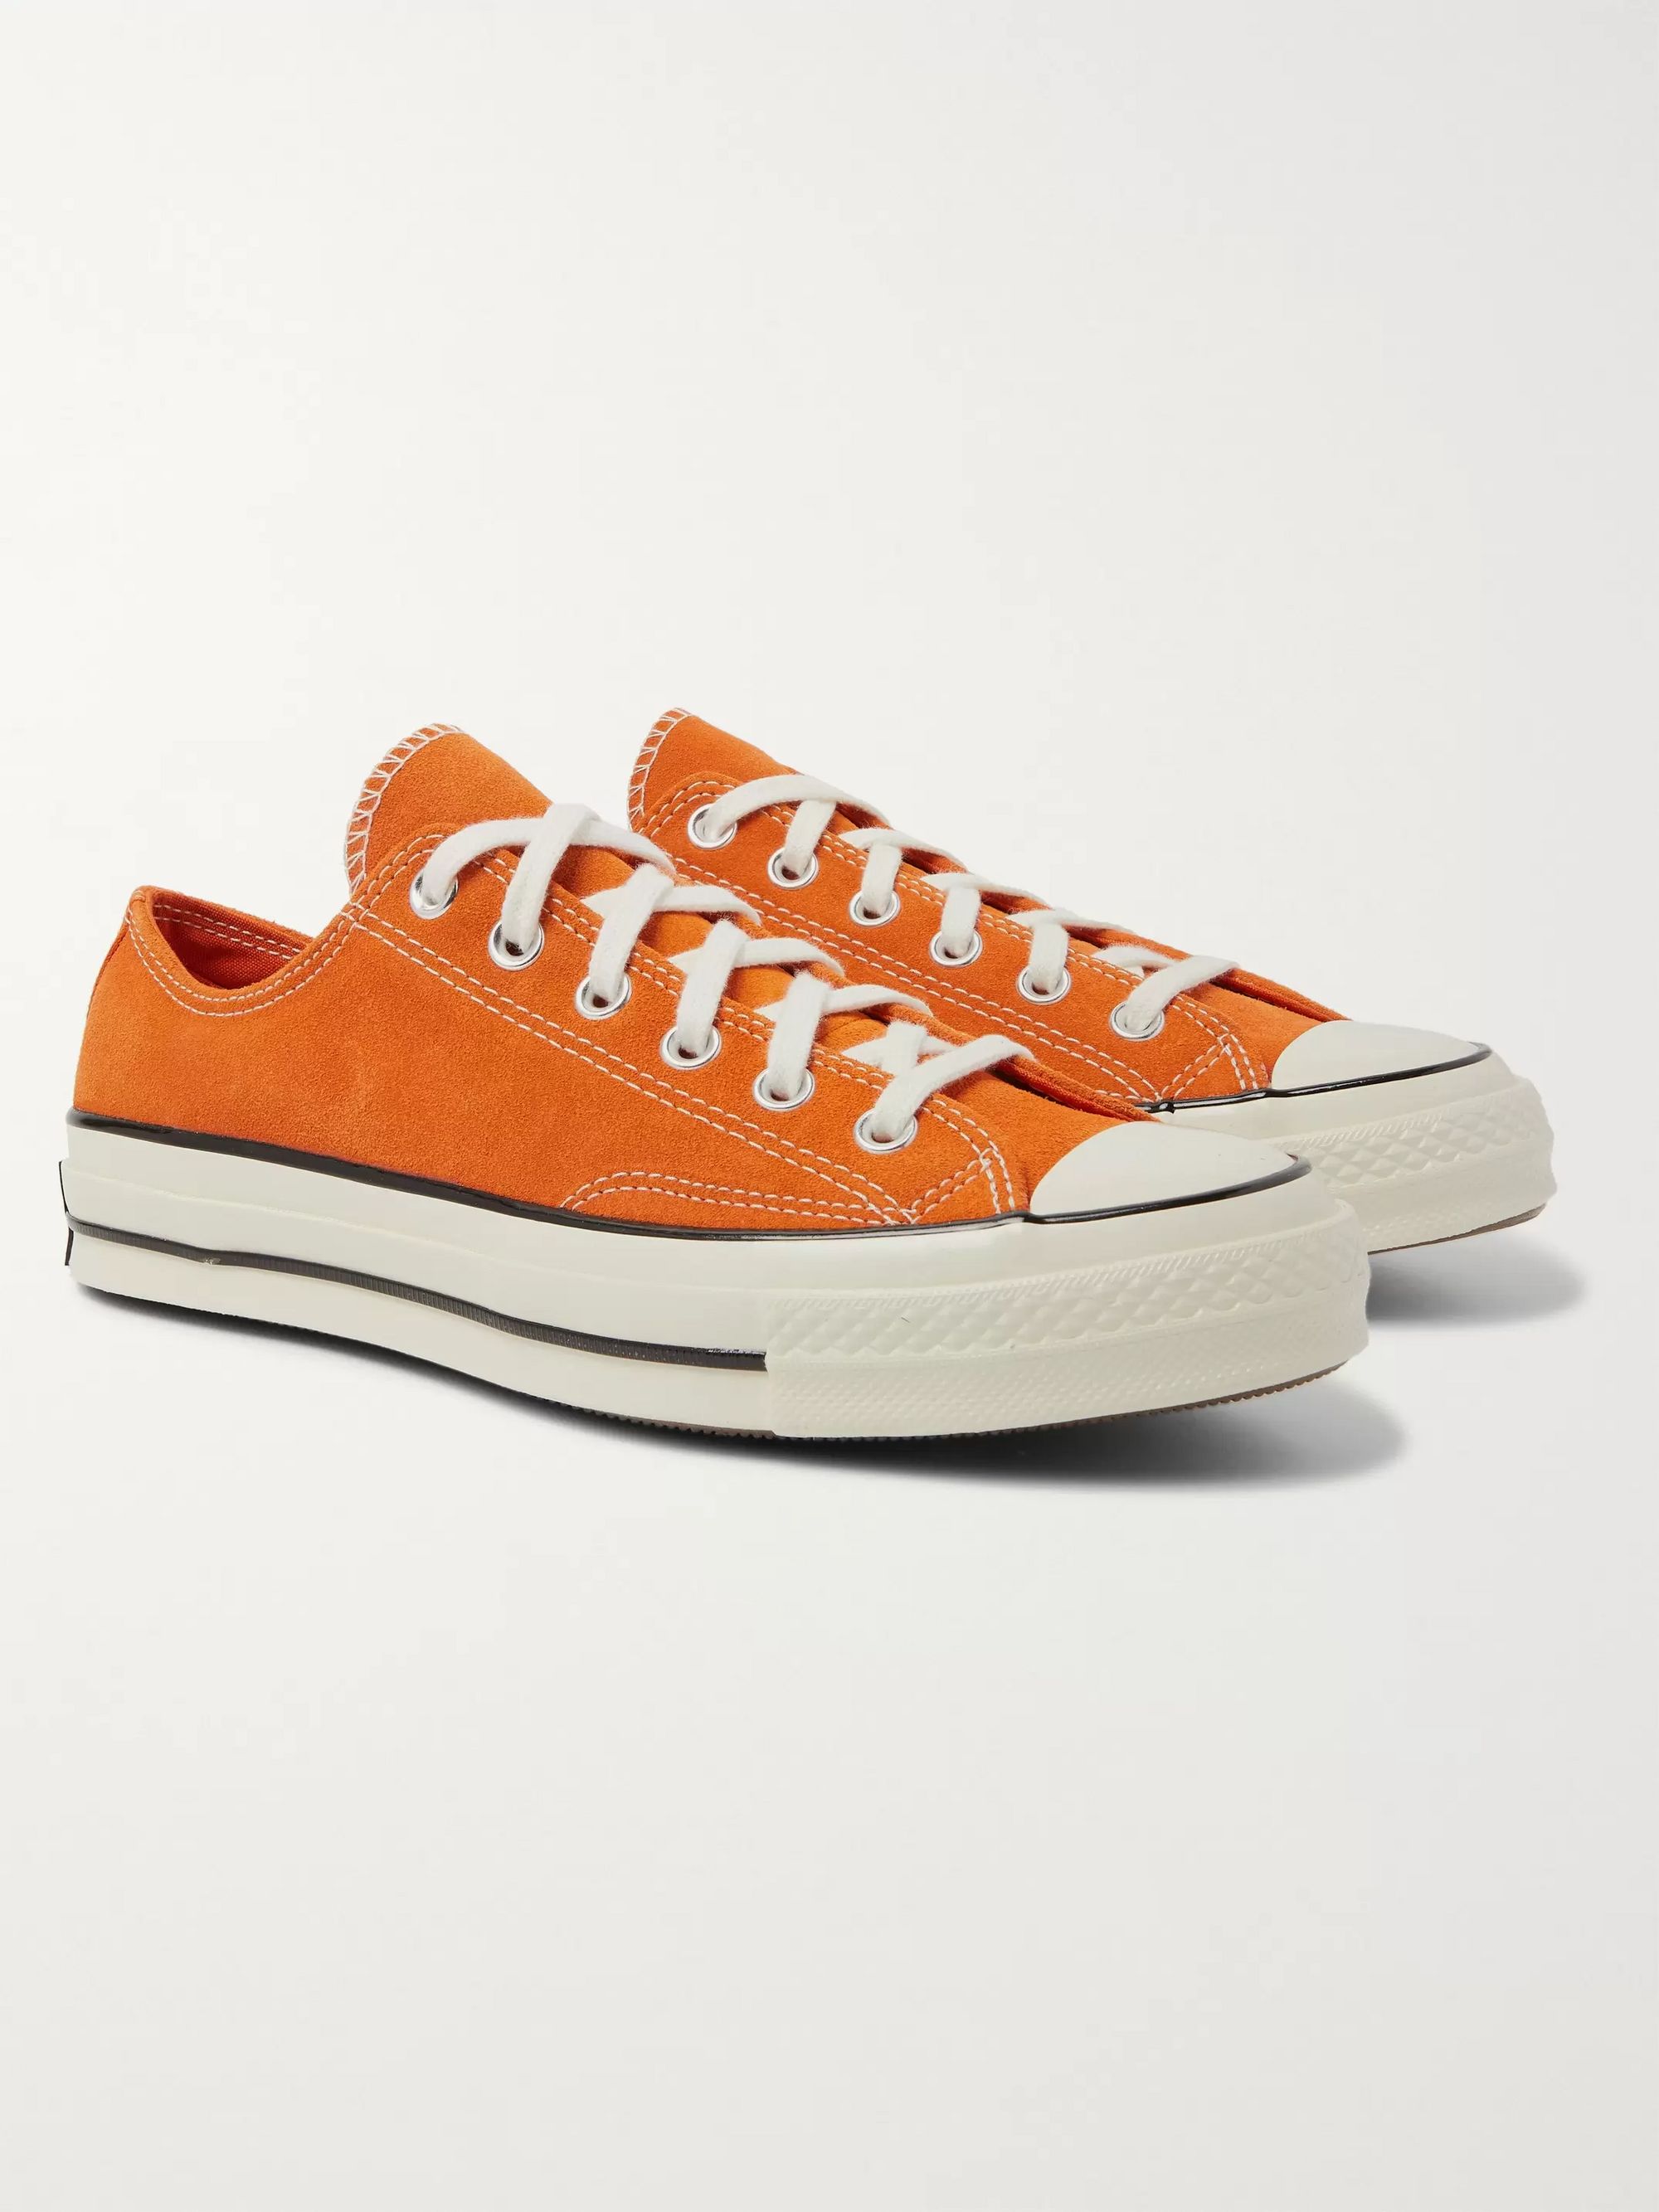 converse orange men's shoes